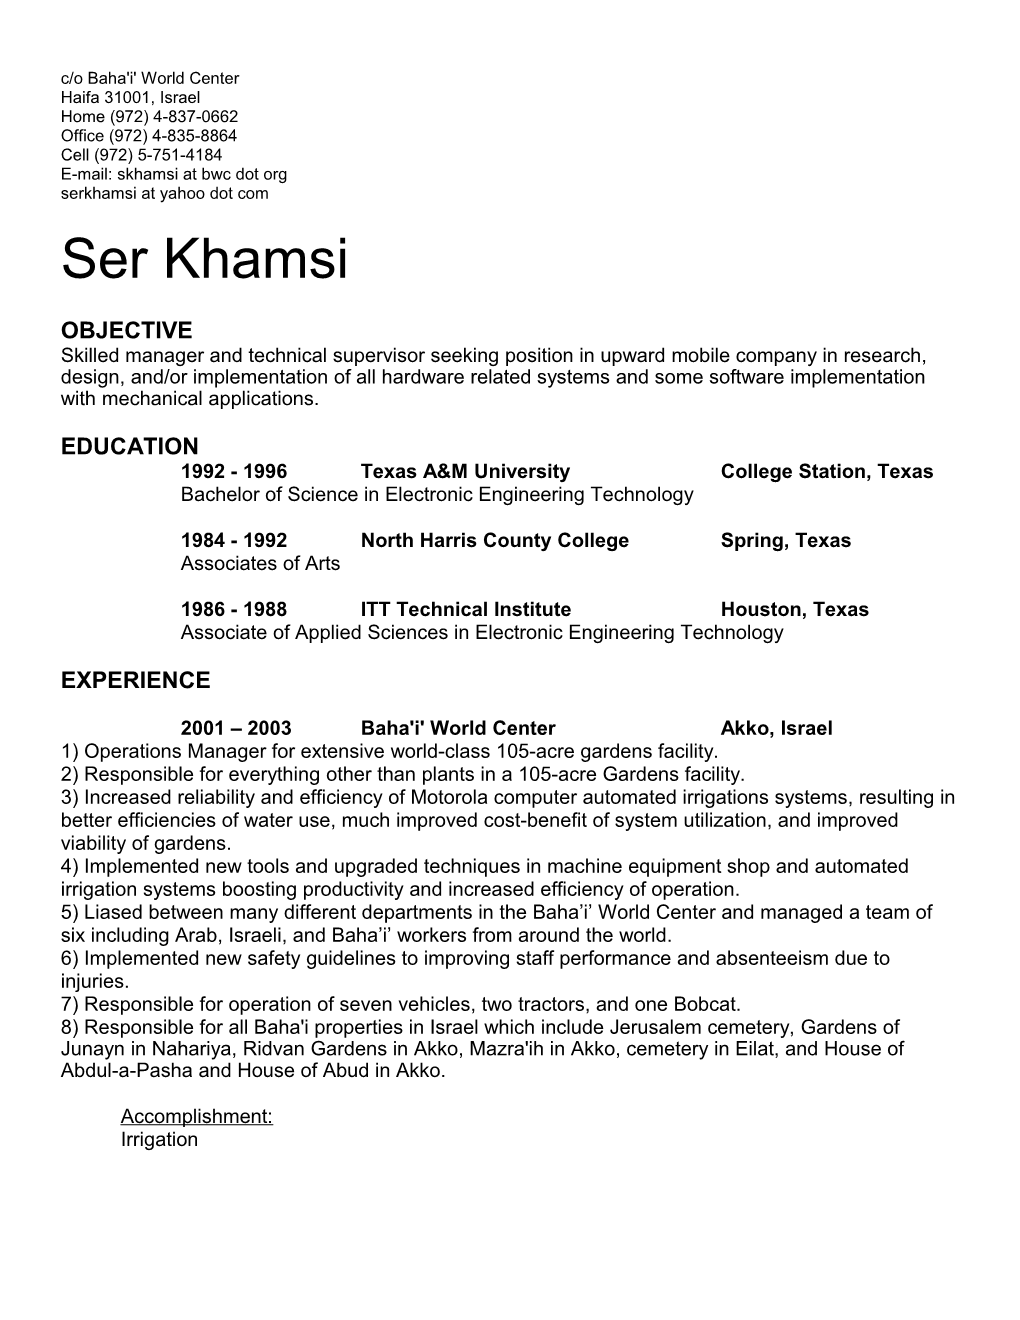 E-Mail: Skhamsi at Bwc Dot Org